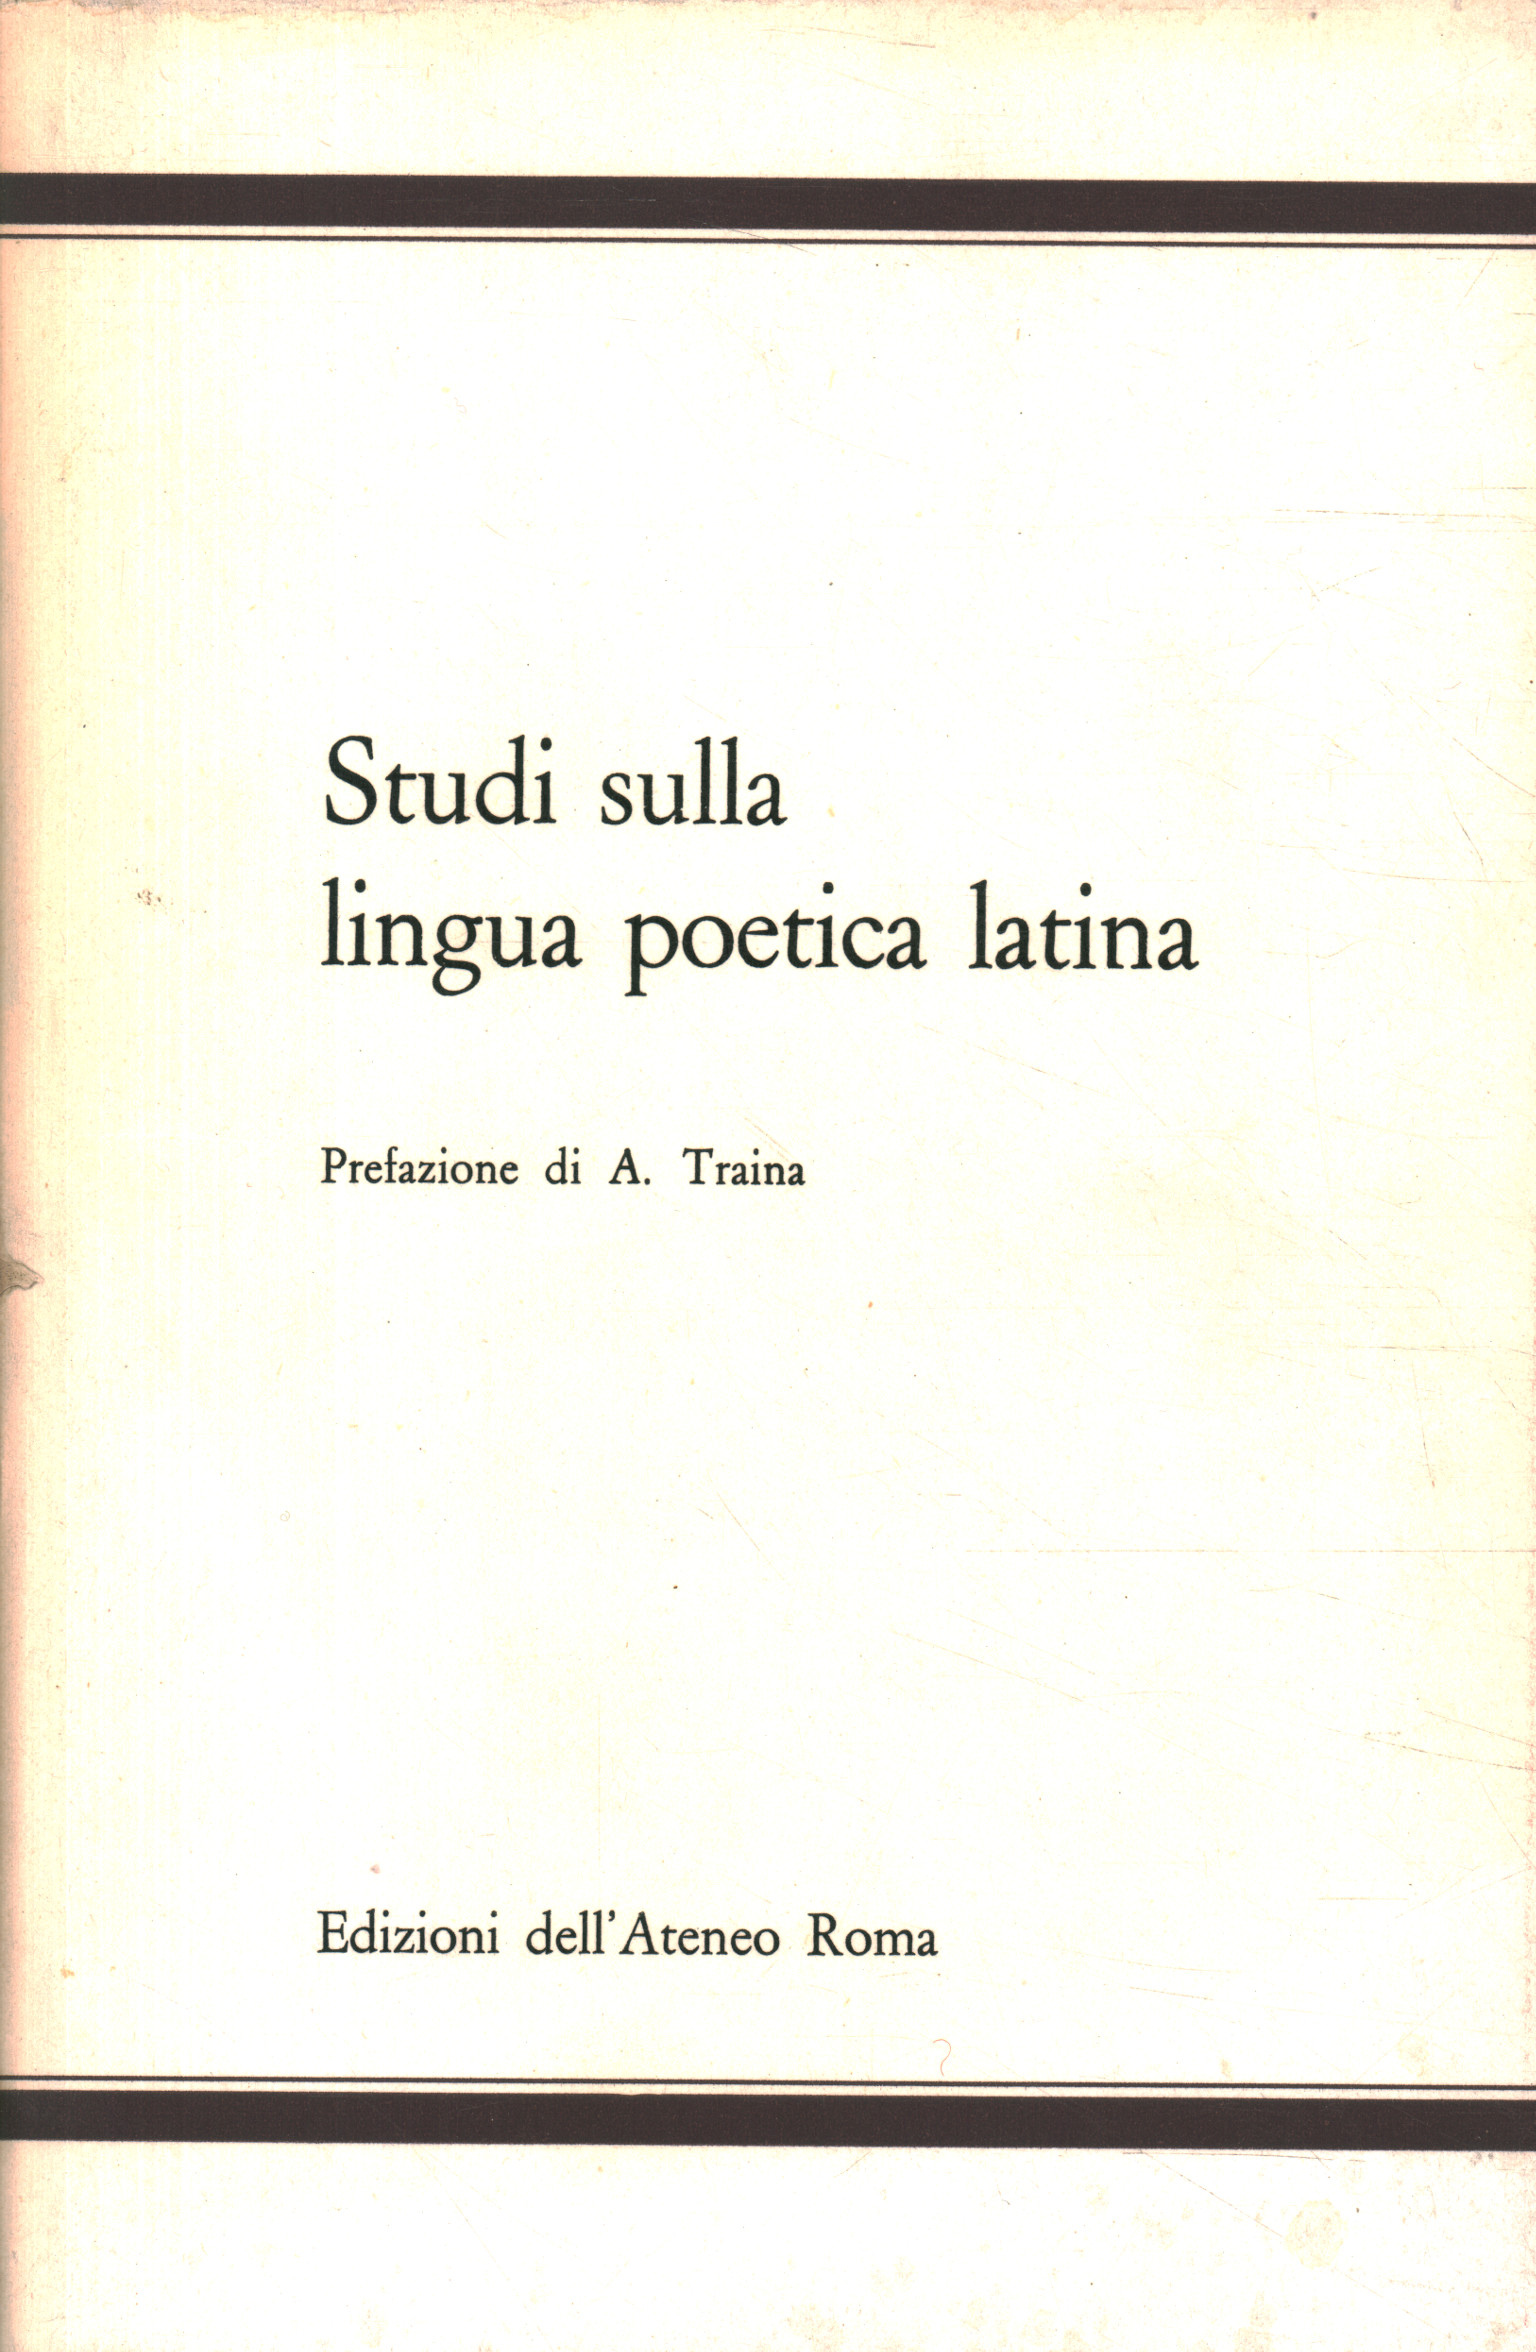 Studies on the Latin poetic language